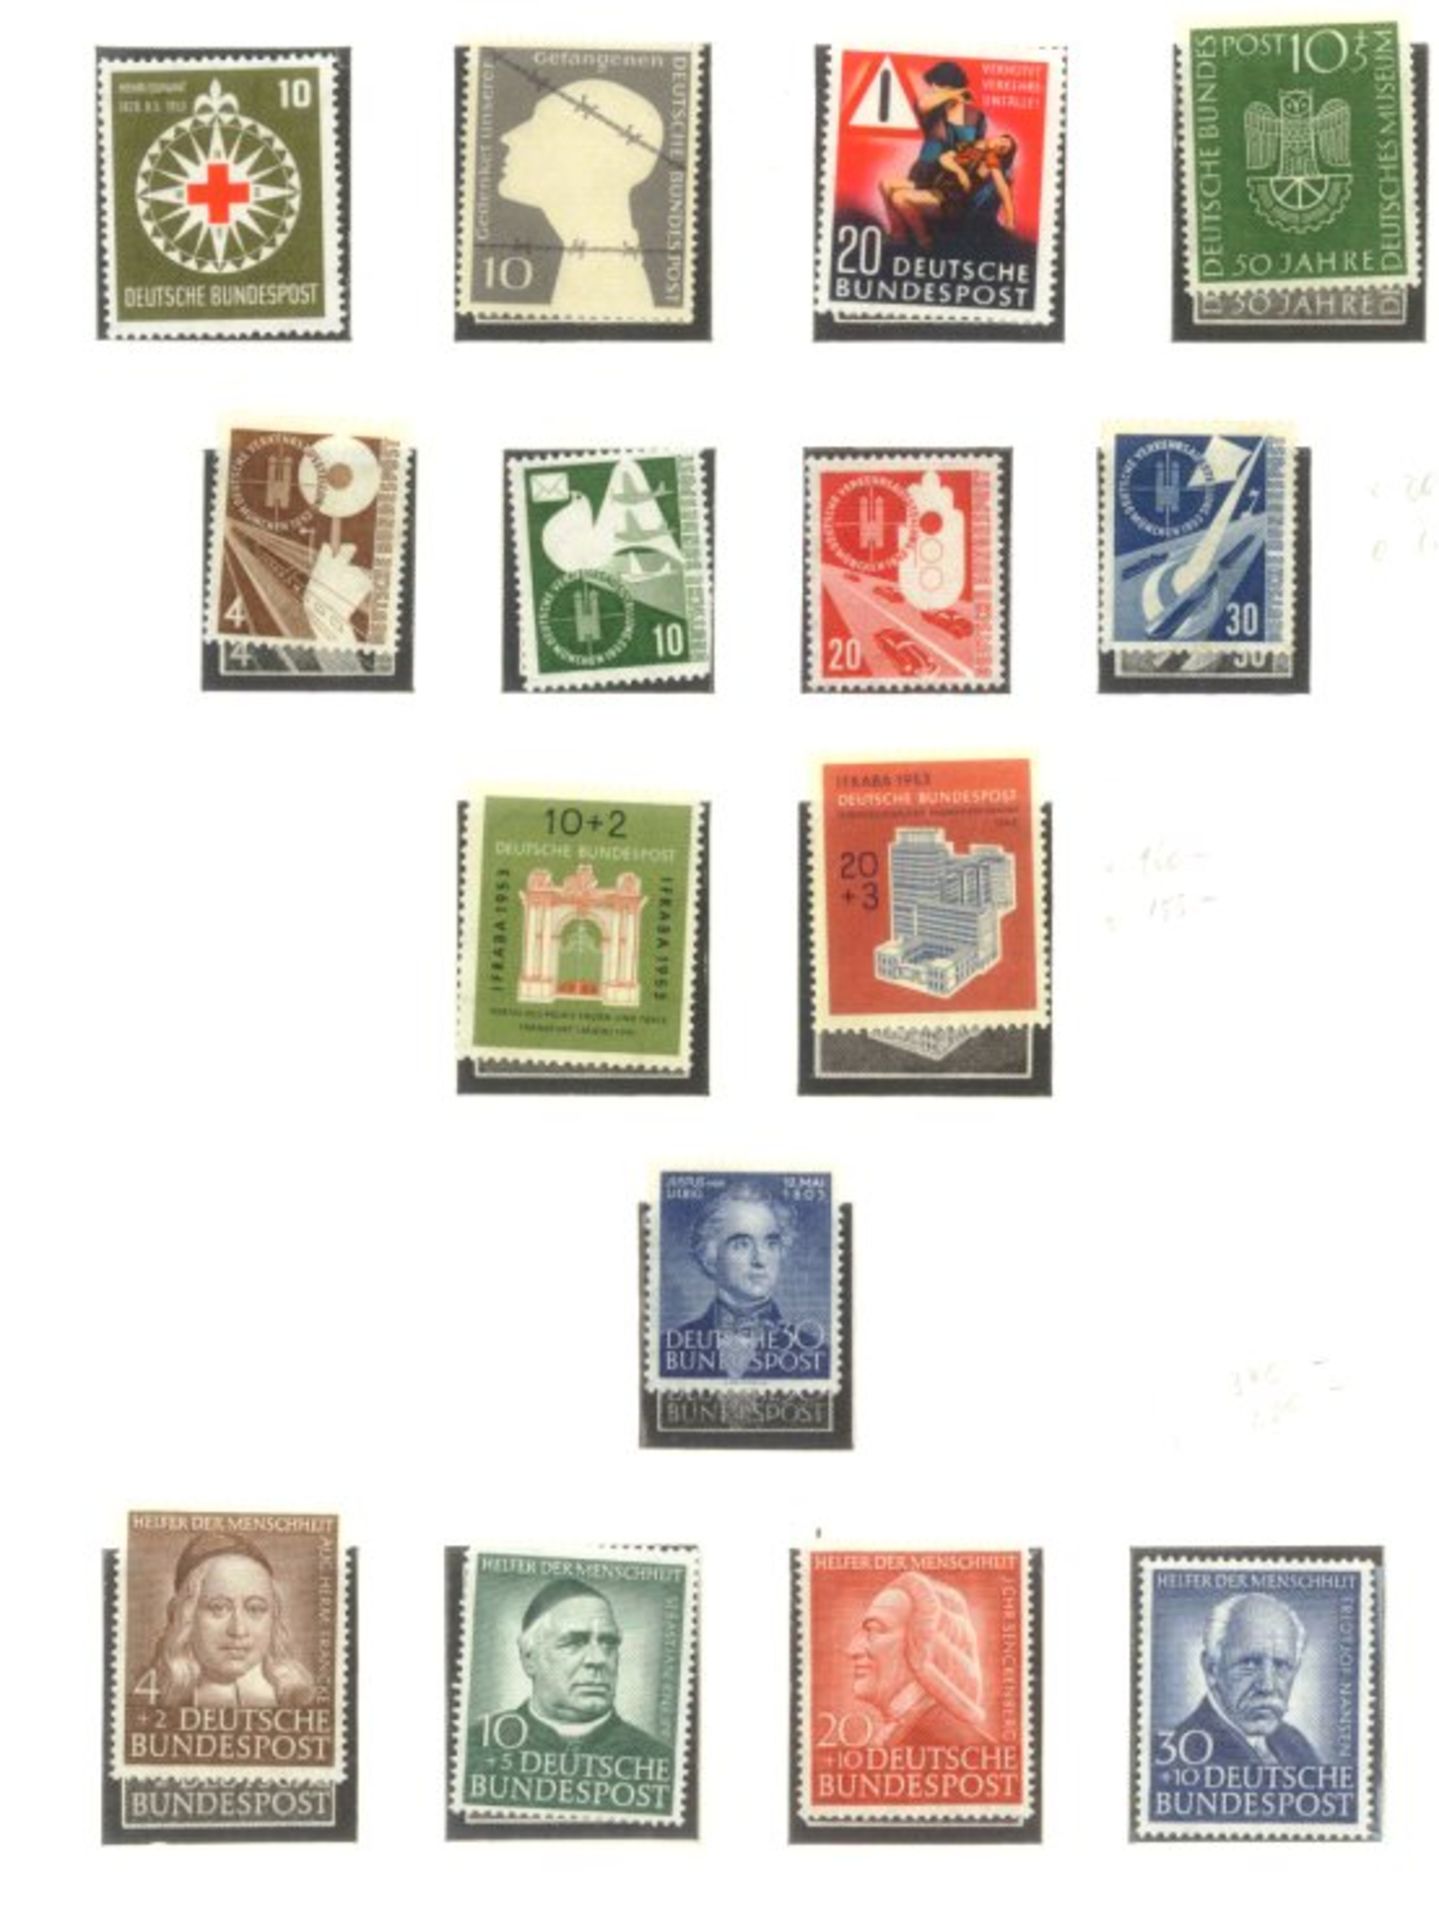 BUND 1949-1986sehr saubere postfrische Sammlung auf LINDNER -Falzlosblättern mit 3 Ringbindern. In - Bild 6 aus 9